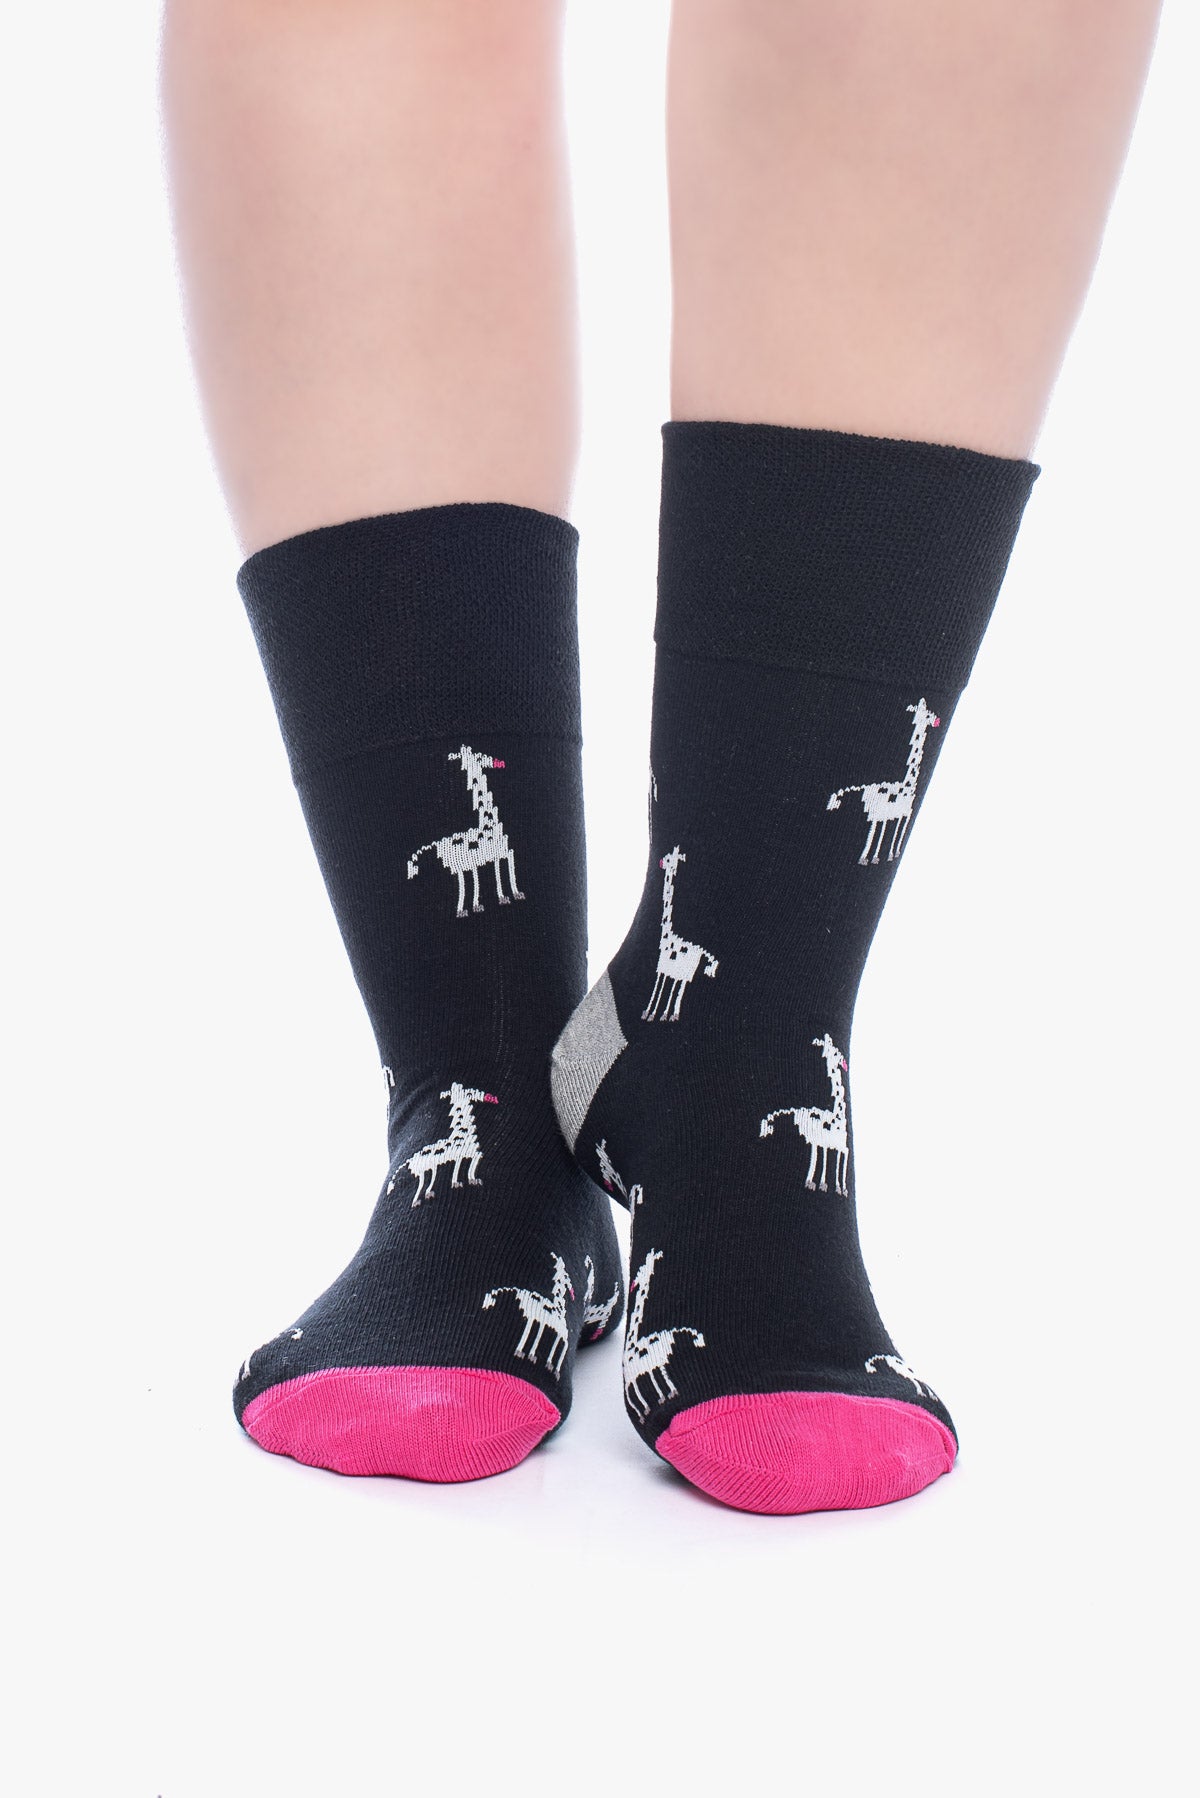 ANETTE 3 animal socks